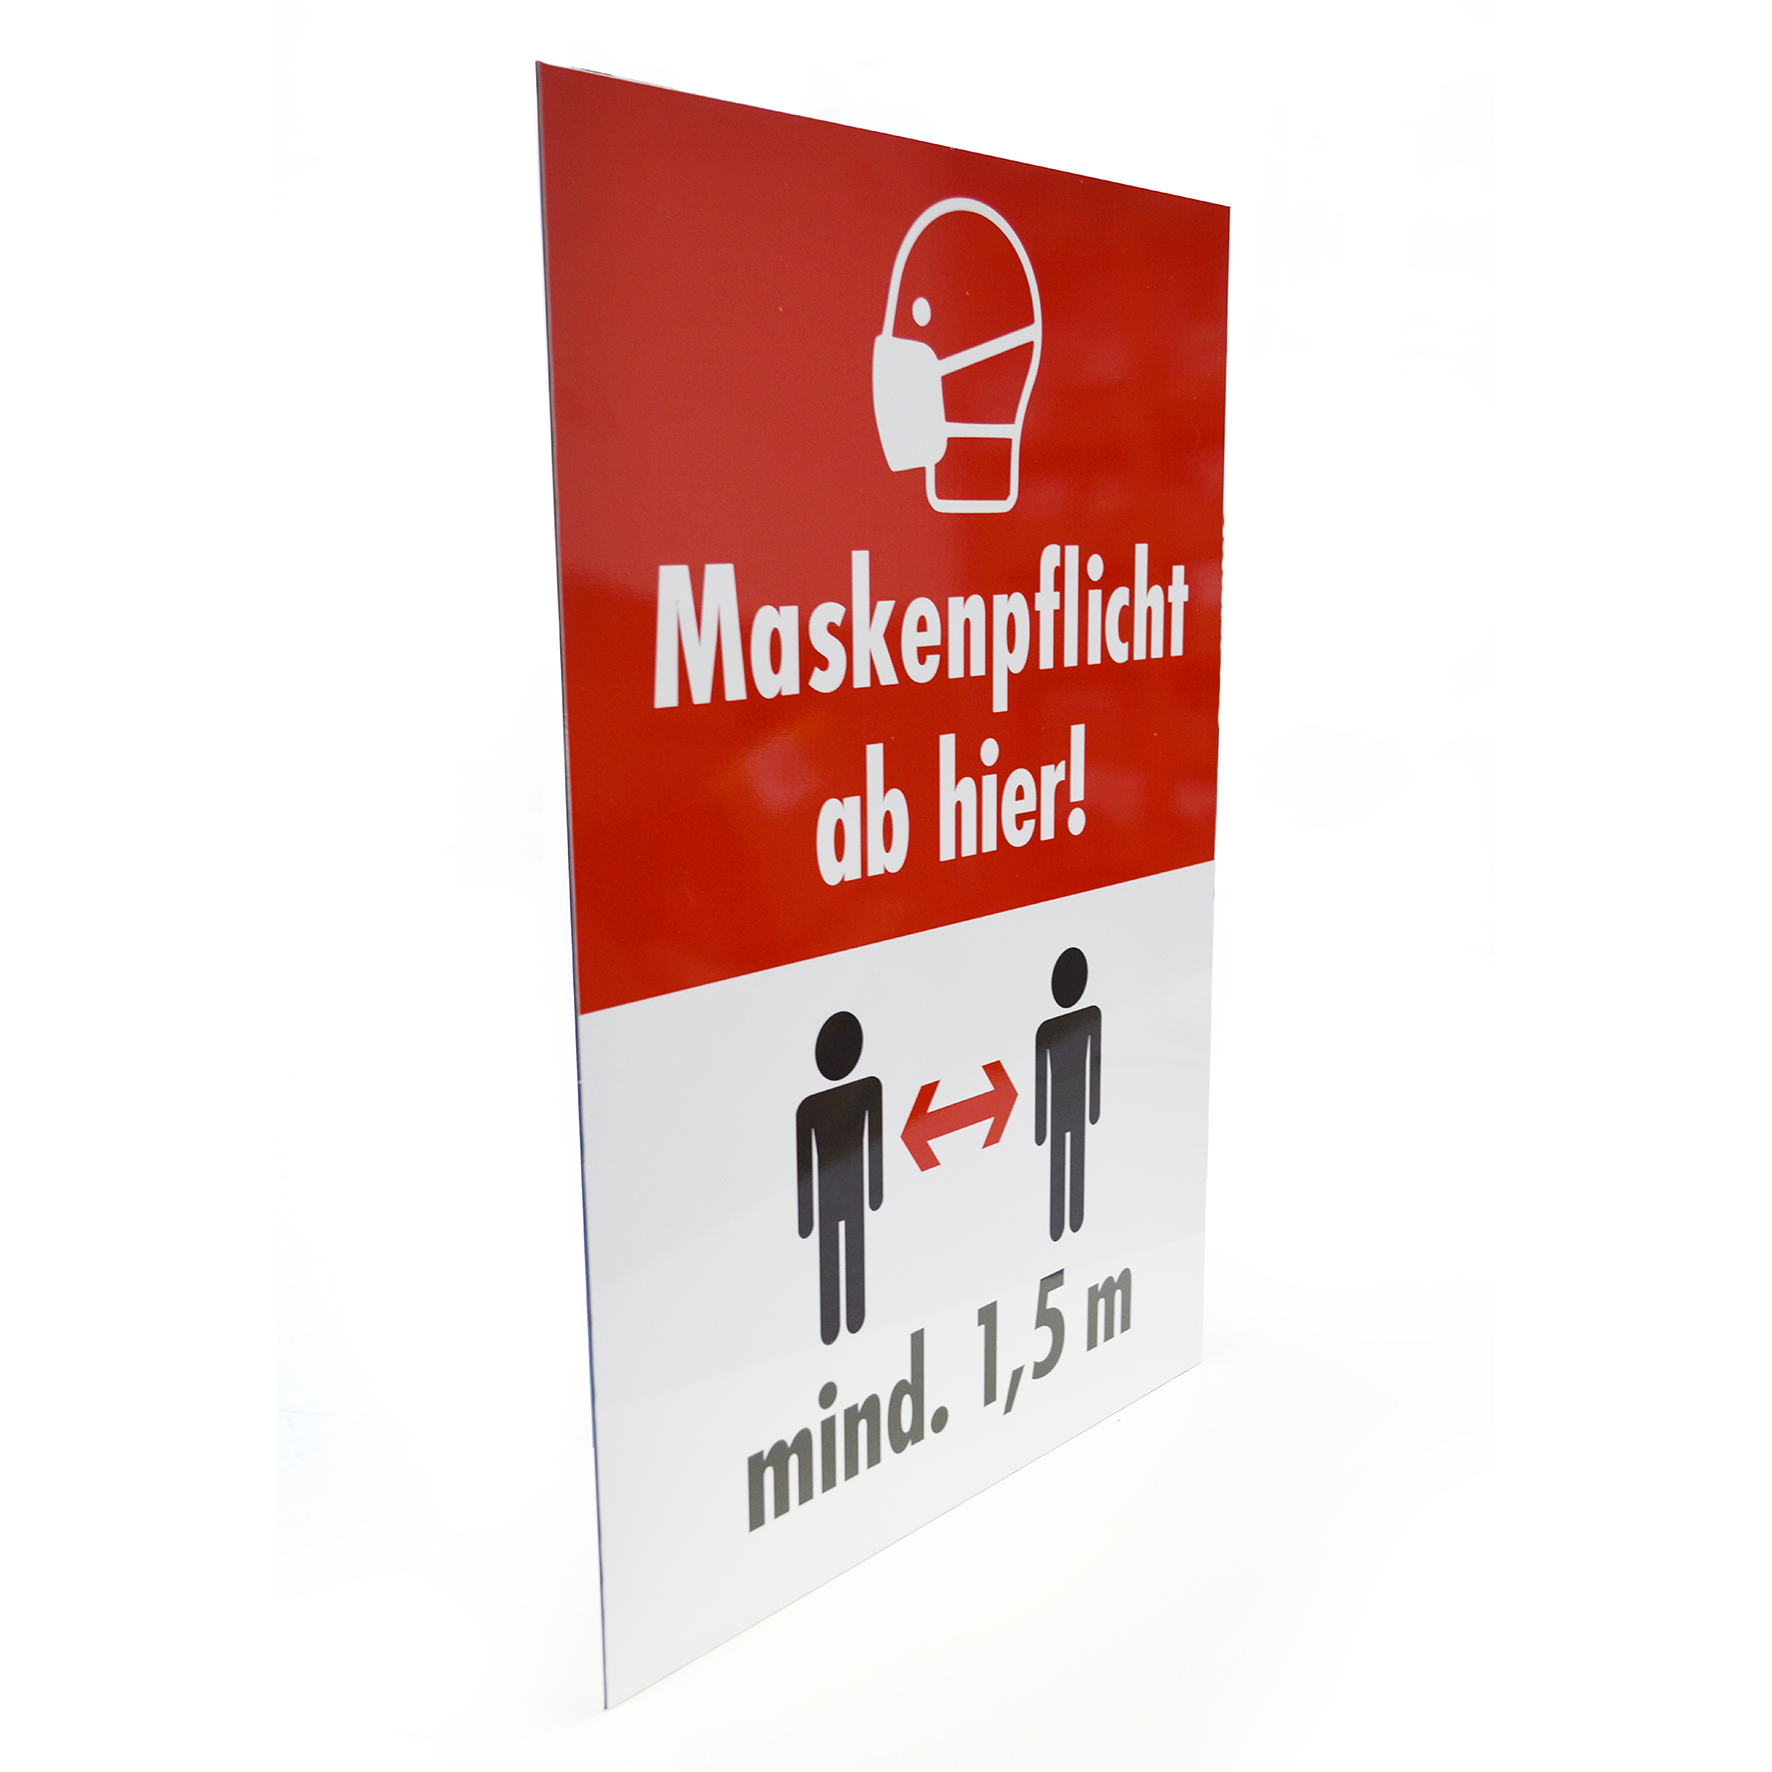 XL-Hinweis-Schilder | 600 x 840 mm |  Maskenpflicht und 1,5 m Mindestabstand | auf 3 mm Alu-Verbundplatte